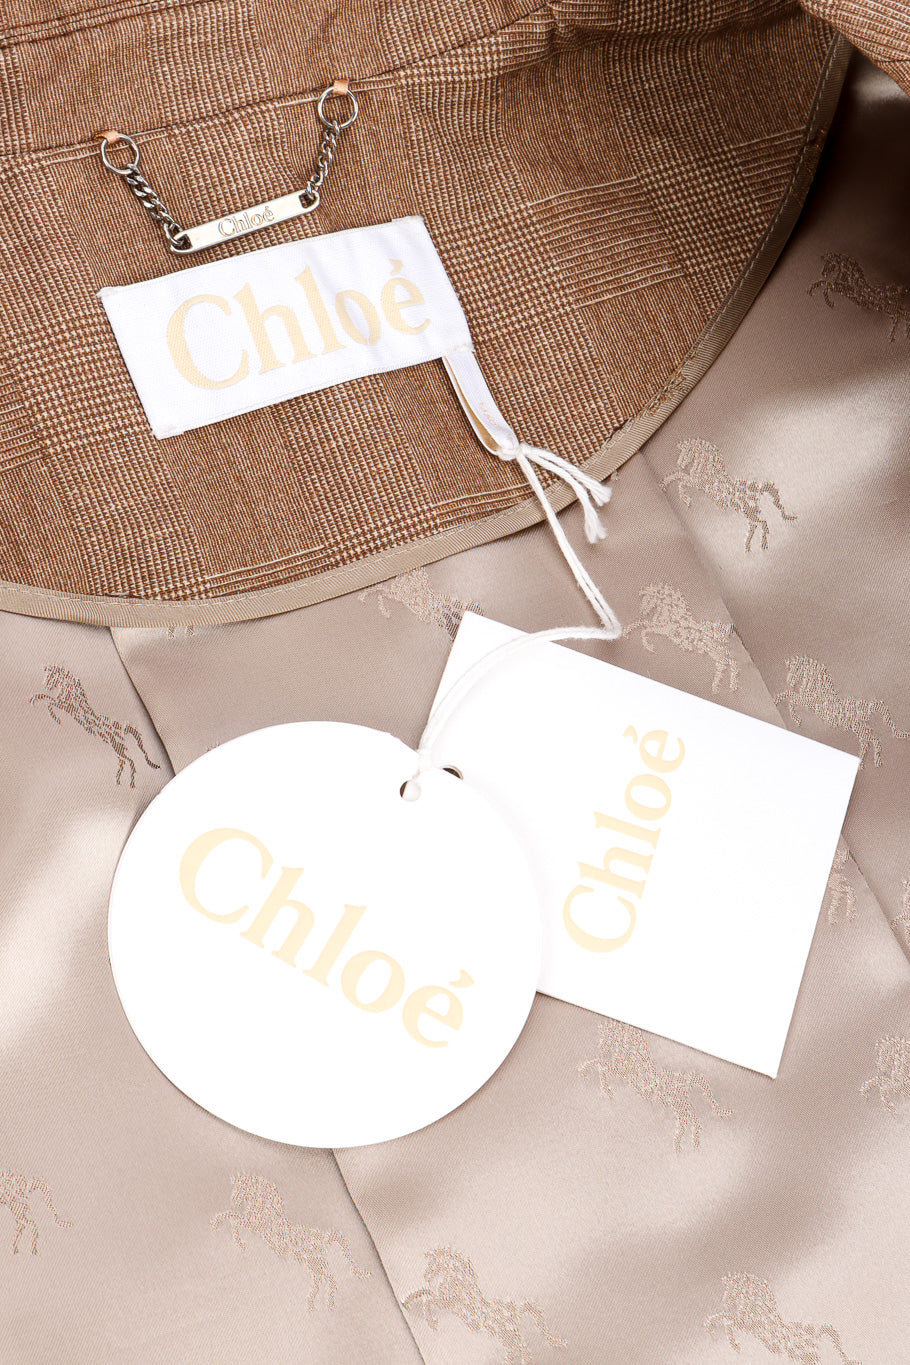 Chloé Equin Print Plaid Trench Coat signature label with originals tags closeup @recessla